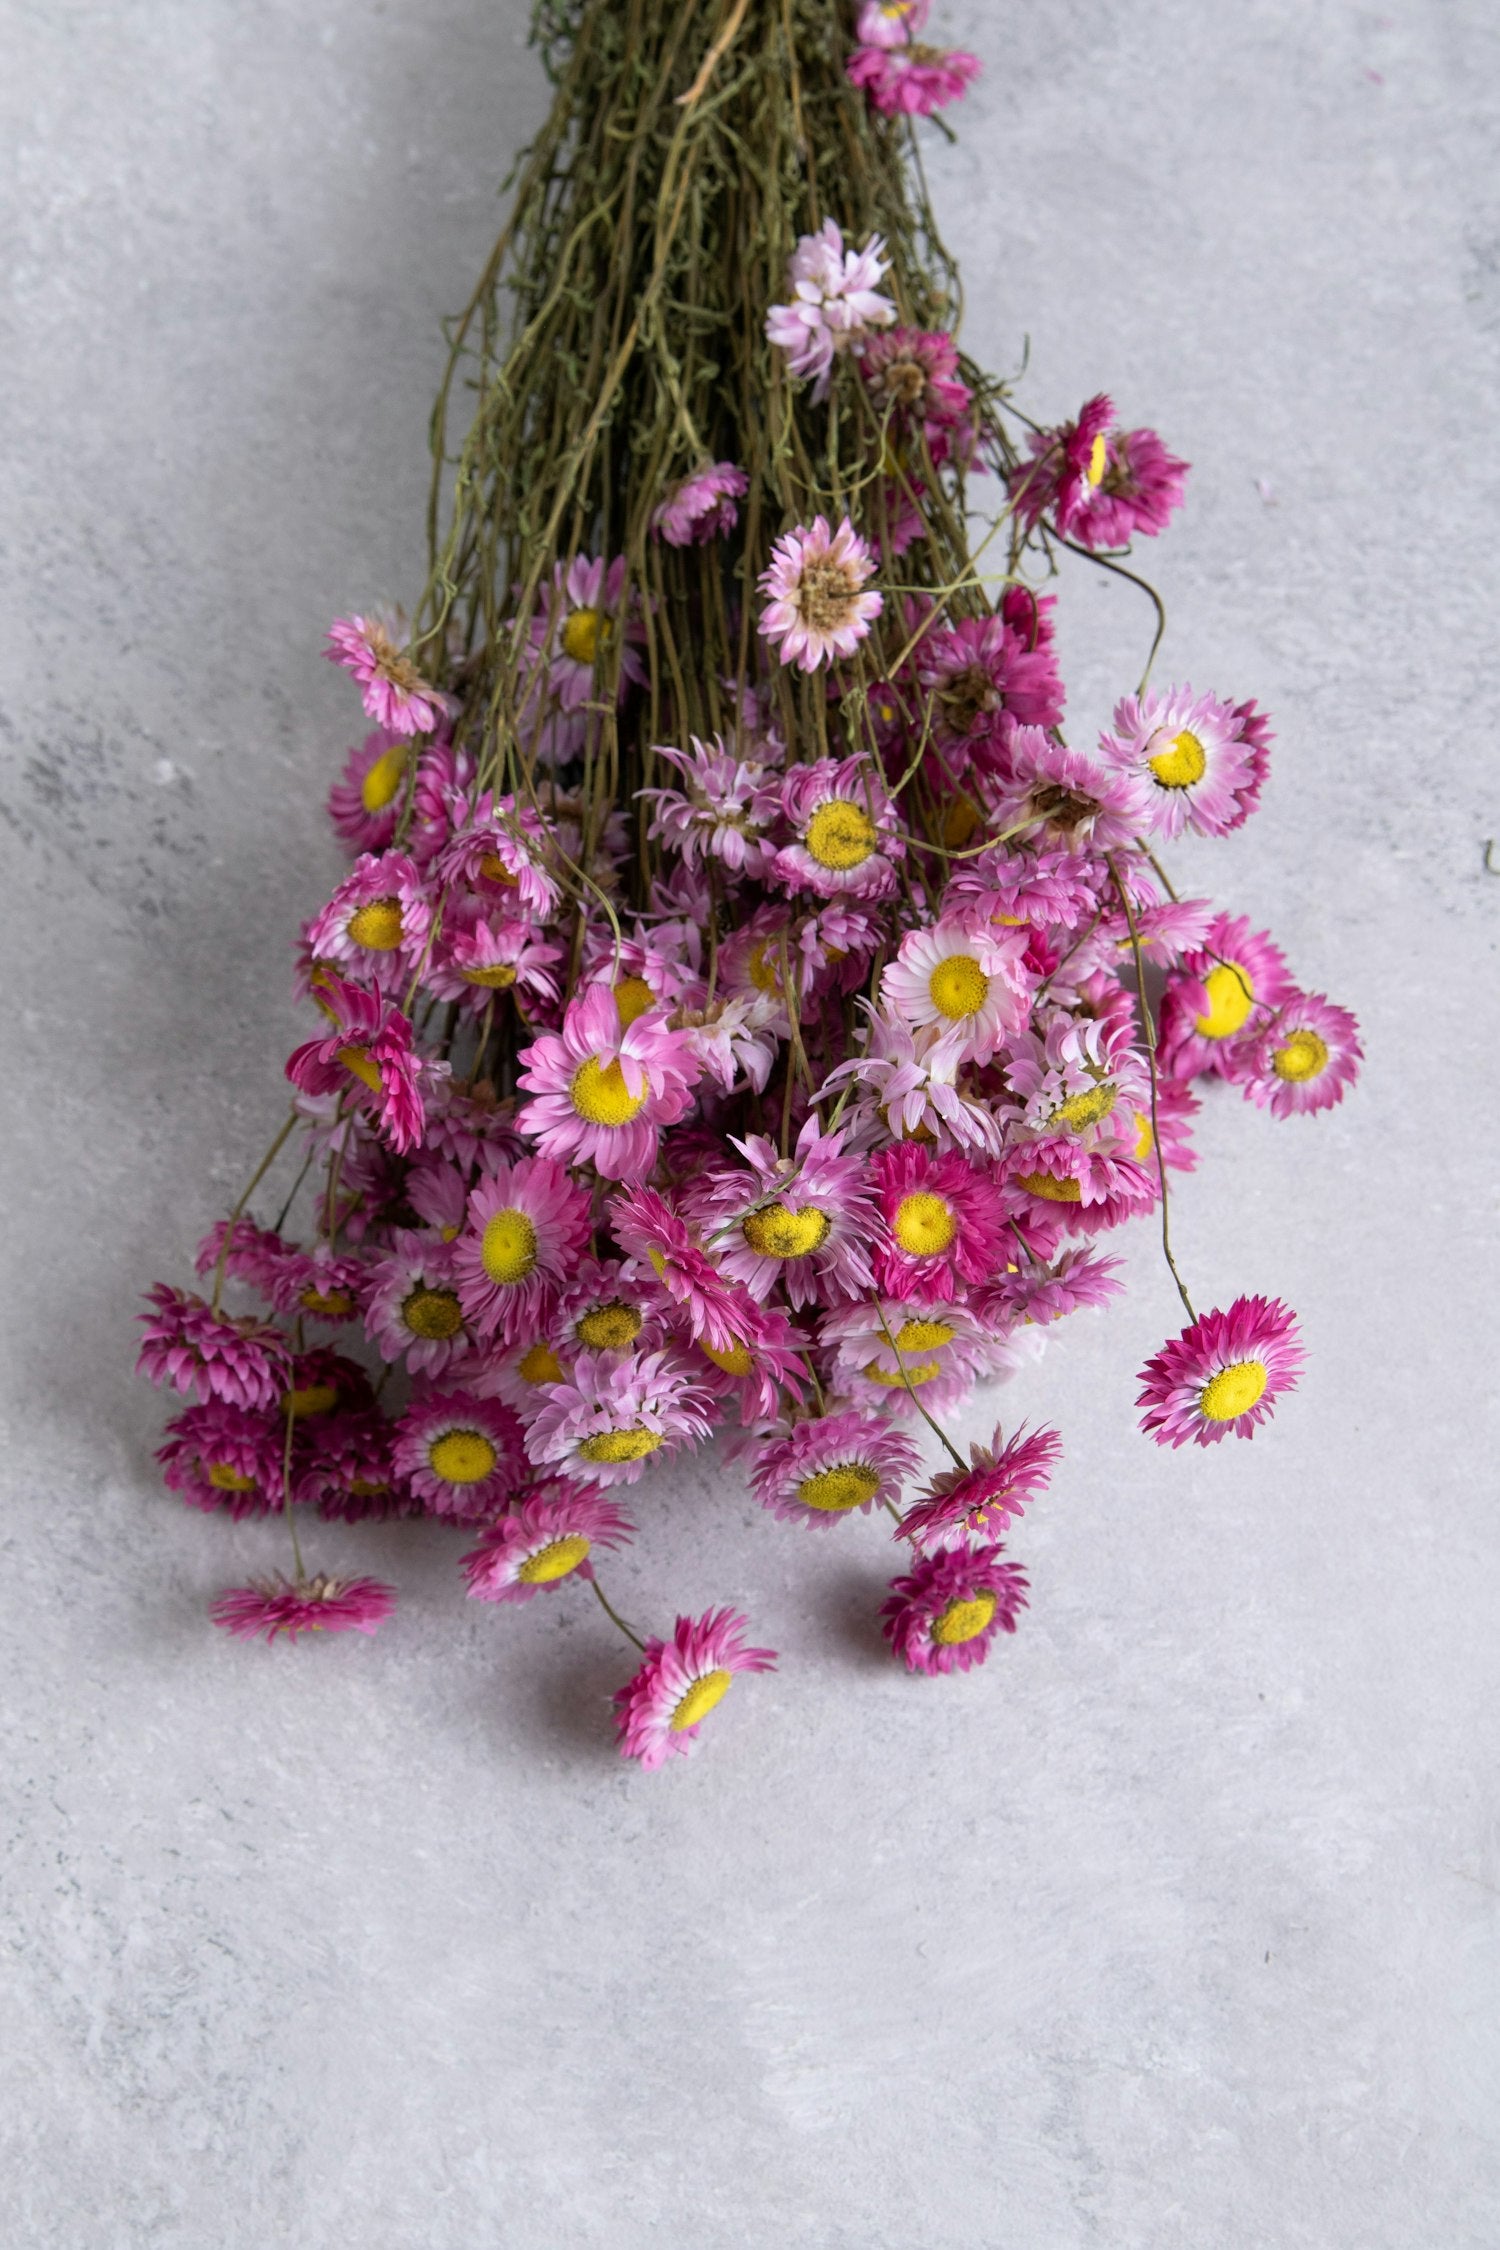 Couronne - Bundeltje gedroogde bloemen 'Acroclinium' (3 stuks per bundel